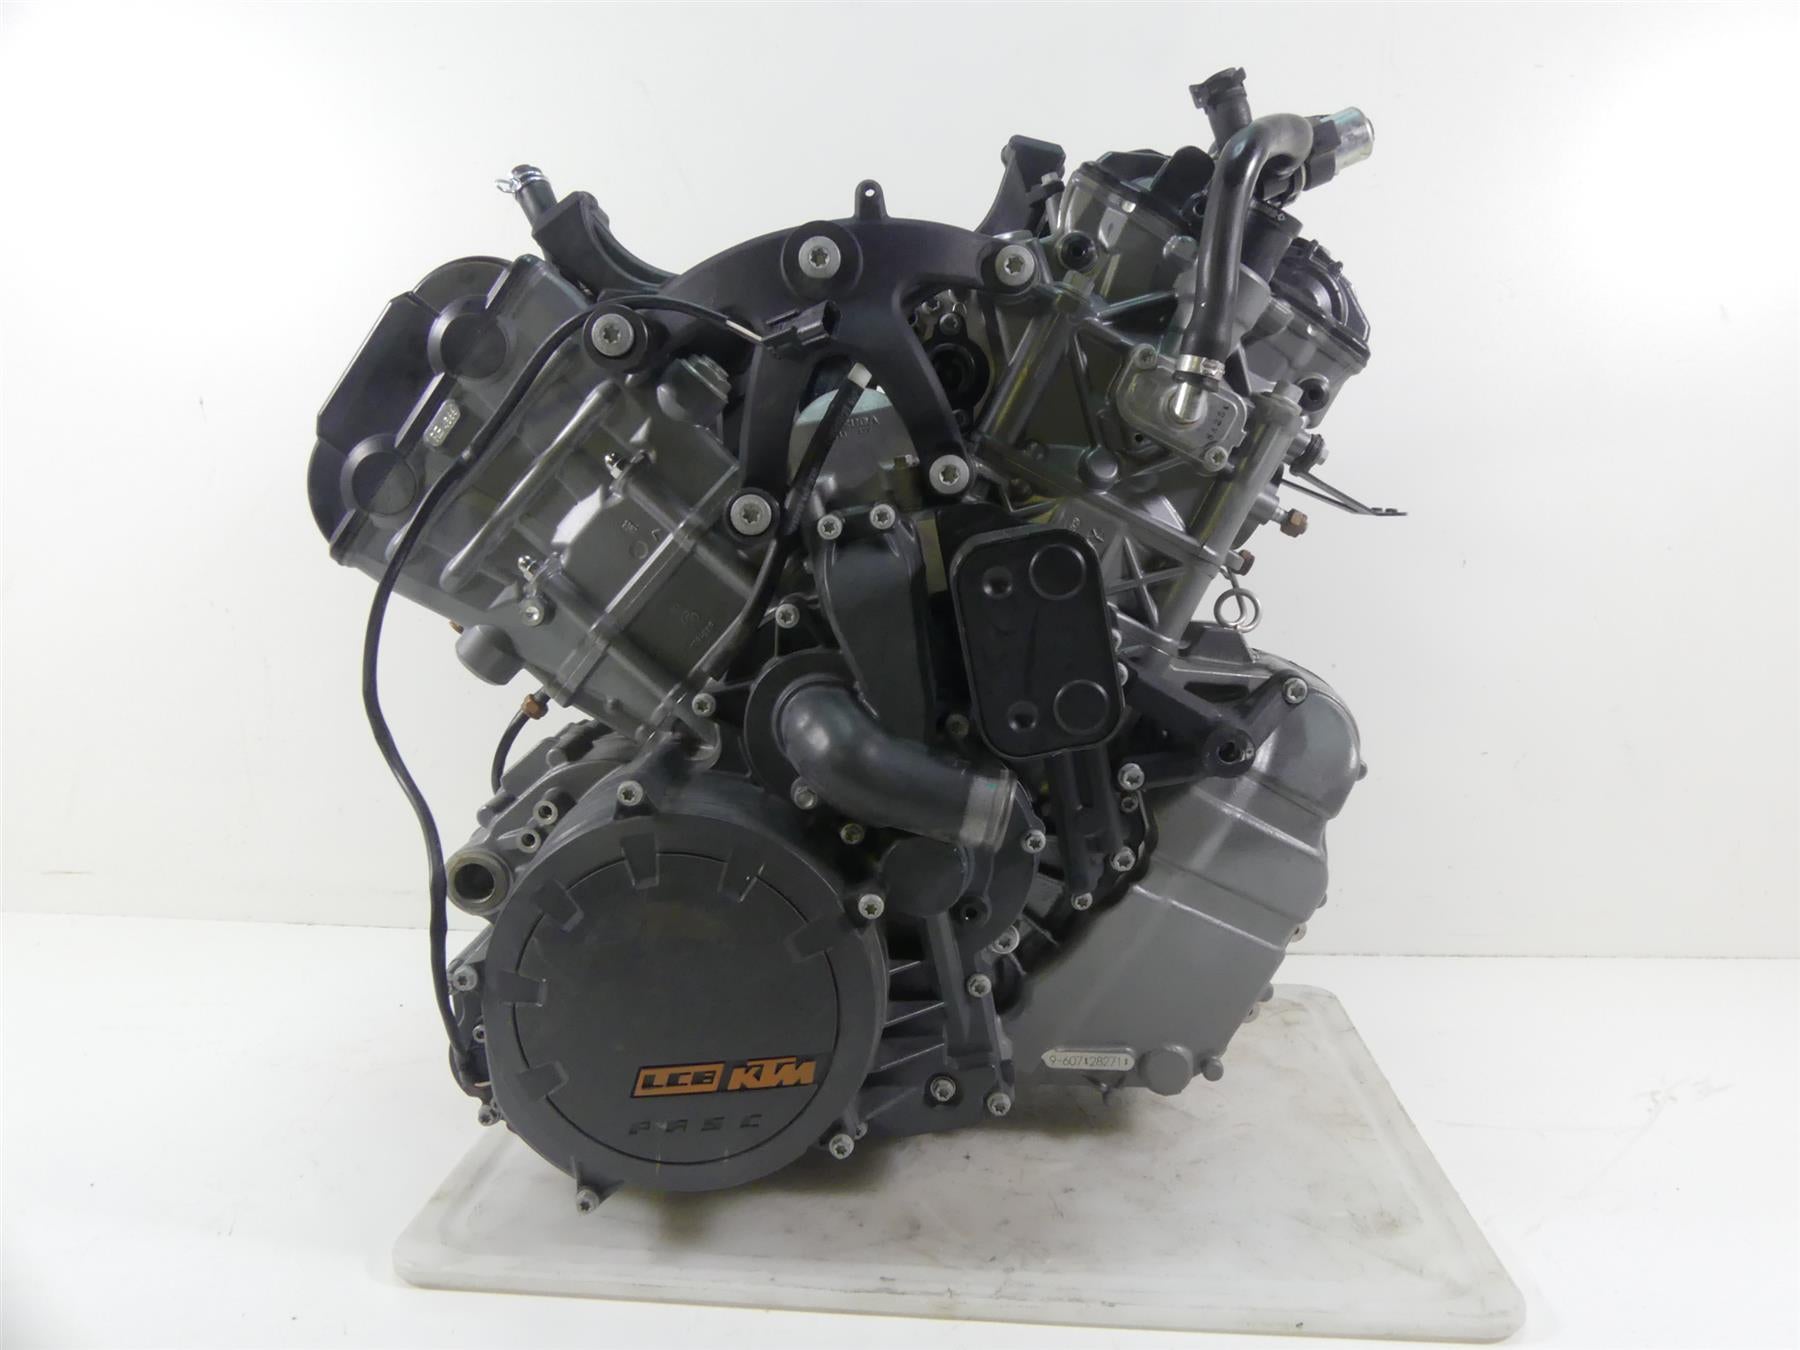 LC8 engine